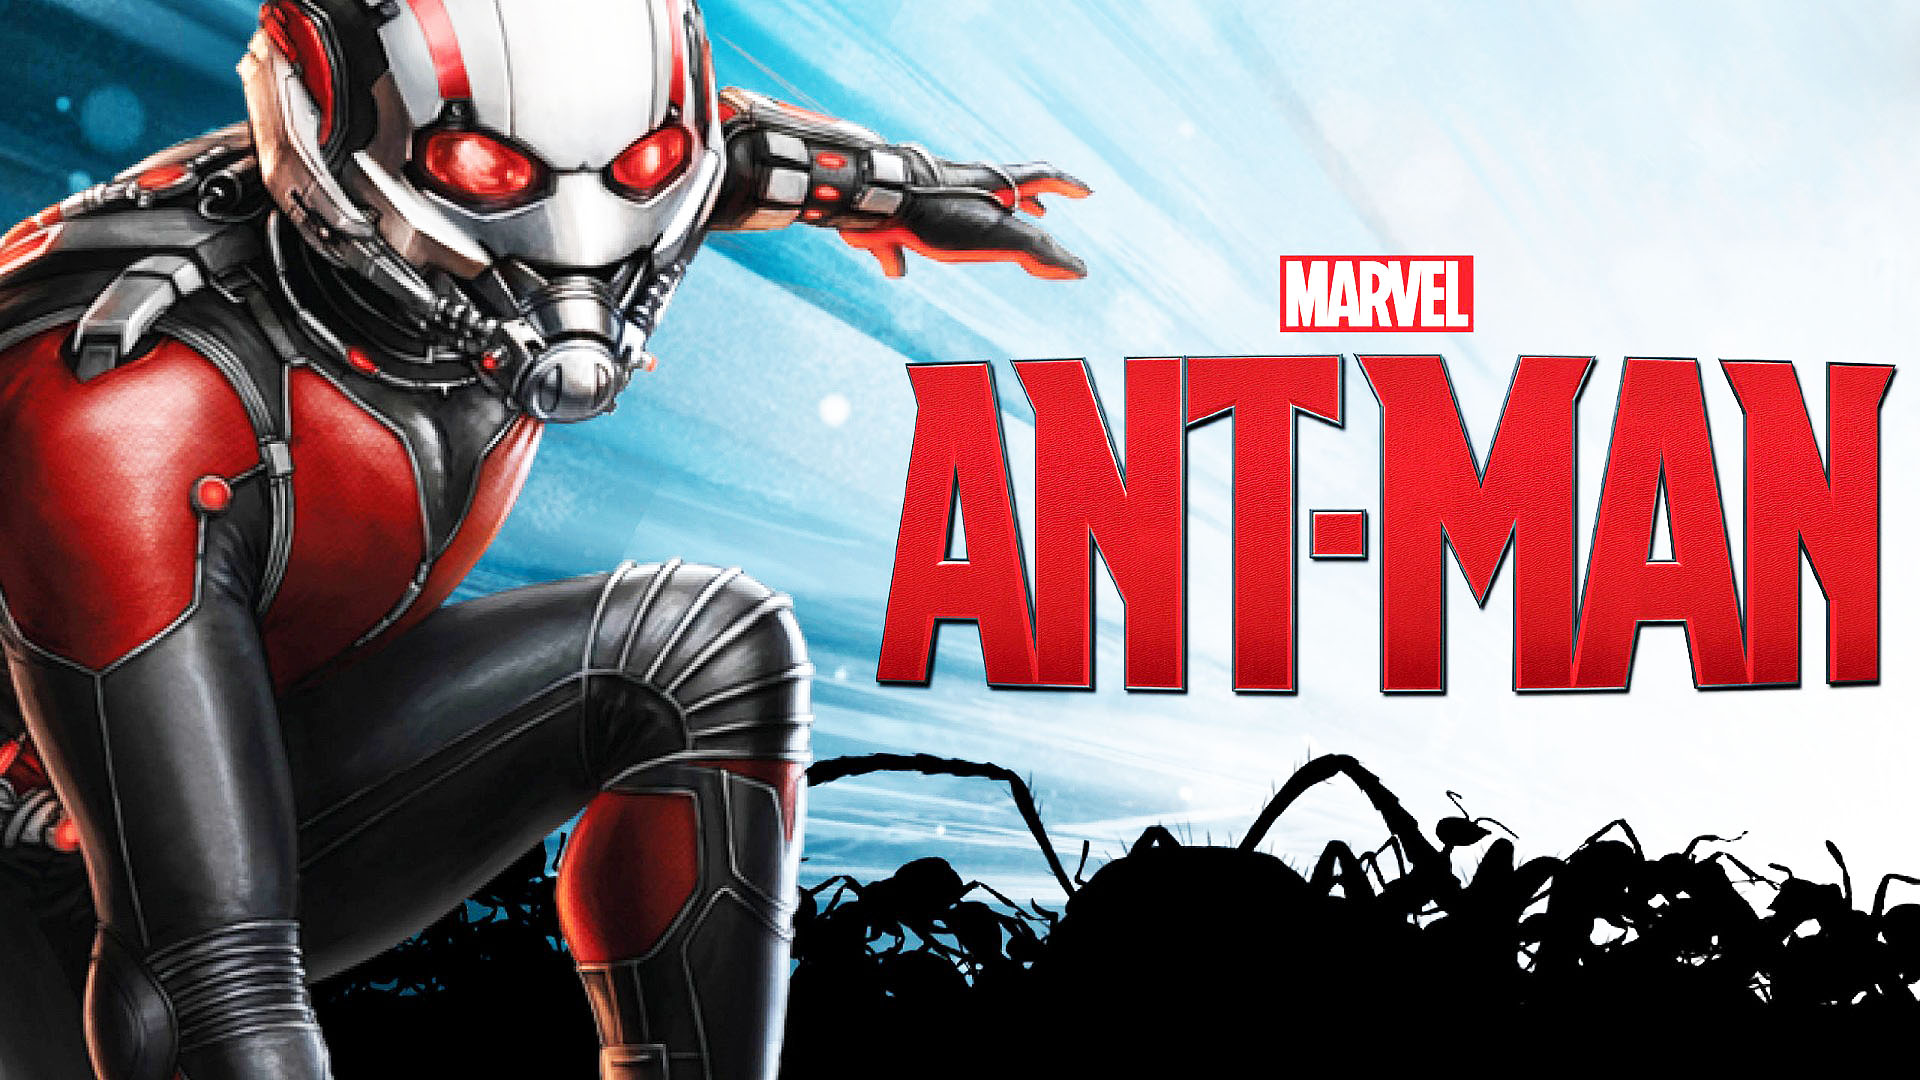 Marvel-Ant-Man-Banner-Poster.jpg